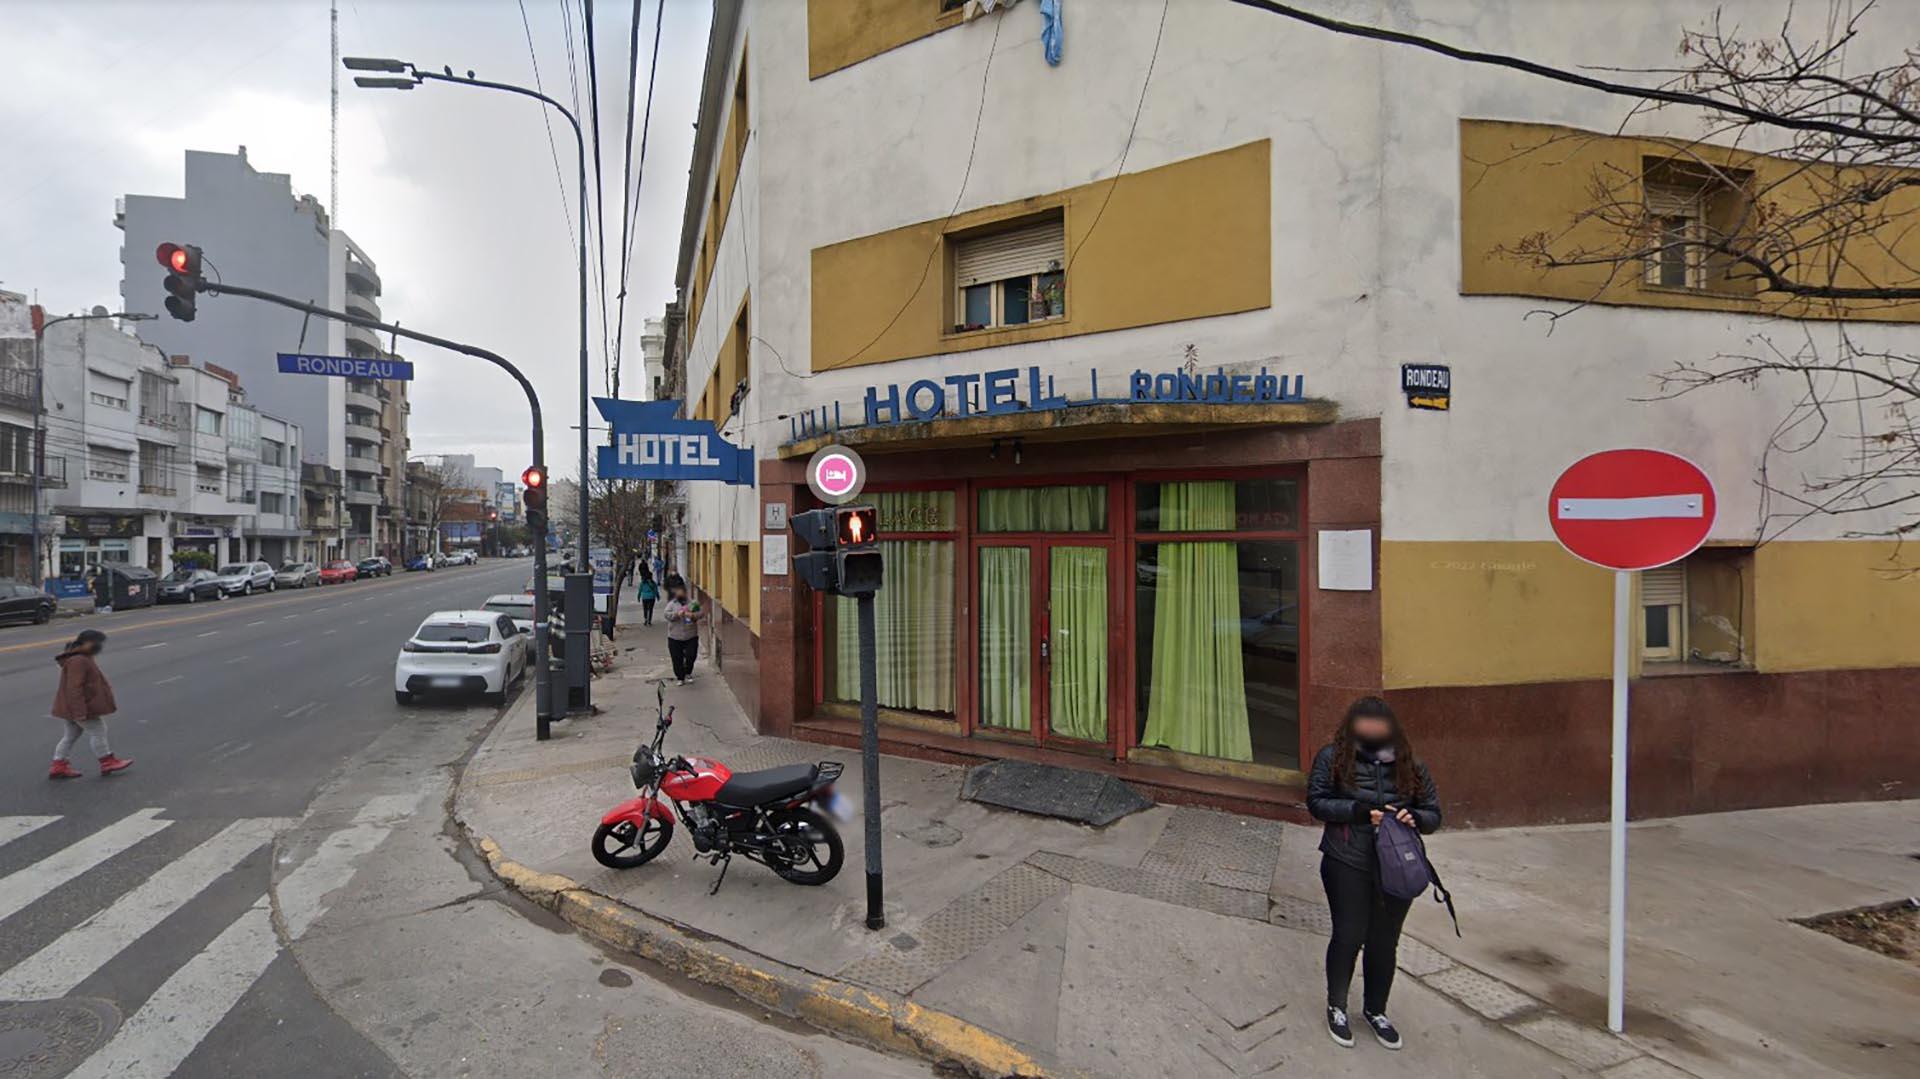 El Hotel Palace Rondeau donde el pasado 1 de febrero hallaron muertos a un hombre de 87 años y a su hijo de 42